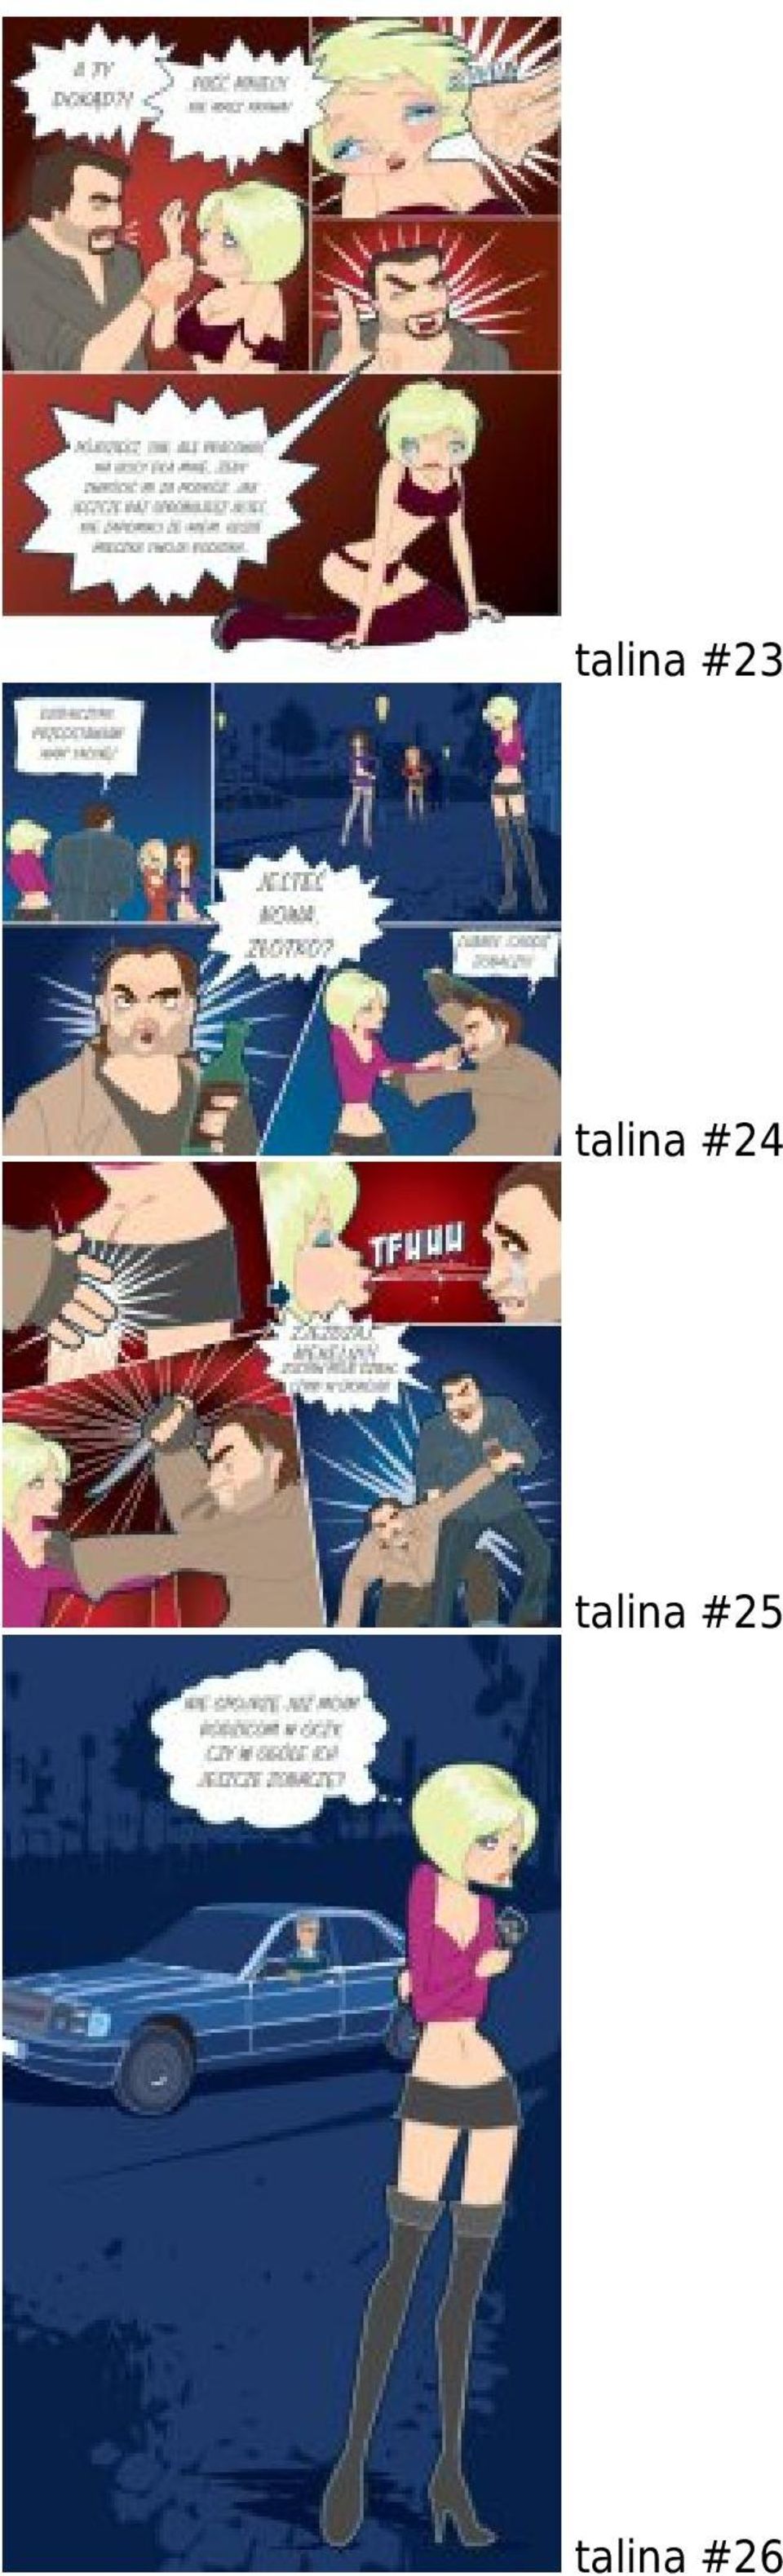 talina #25